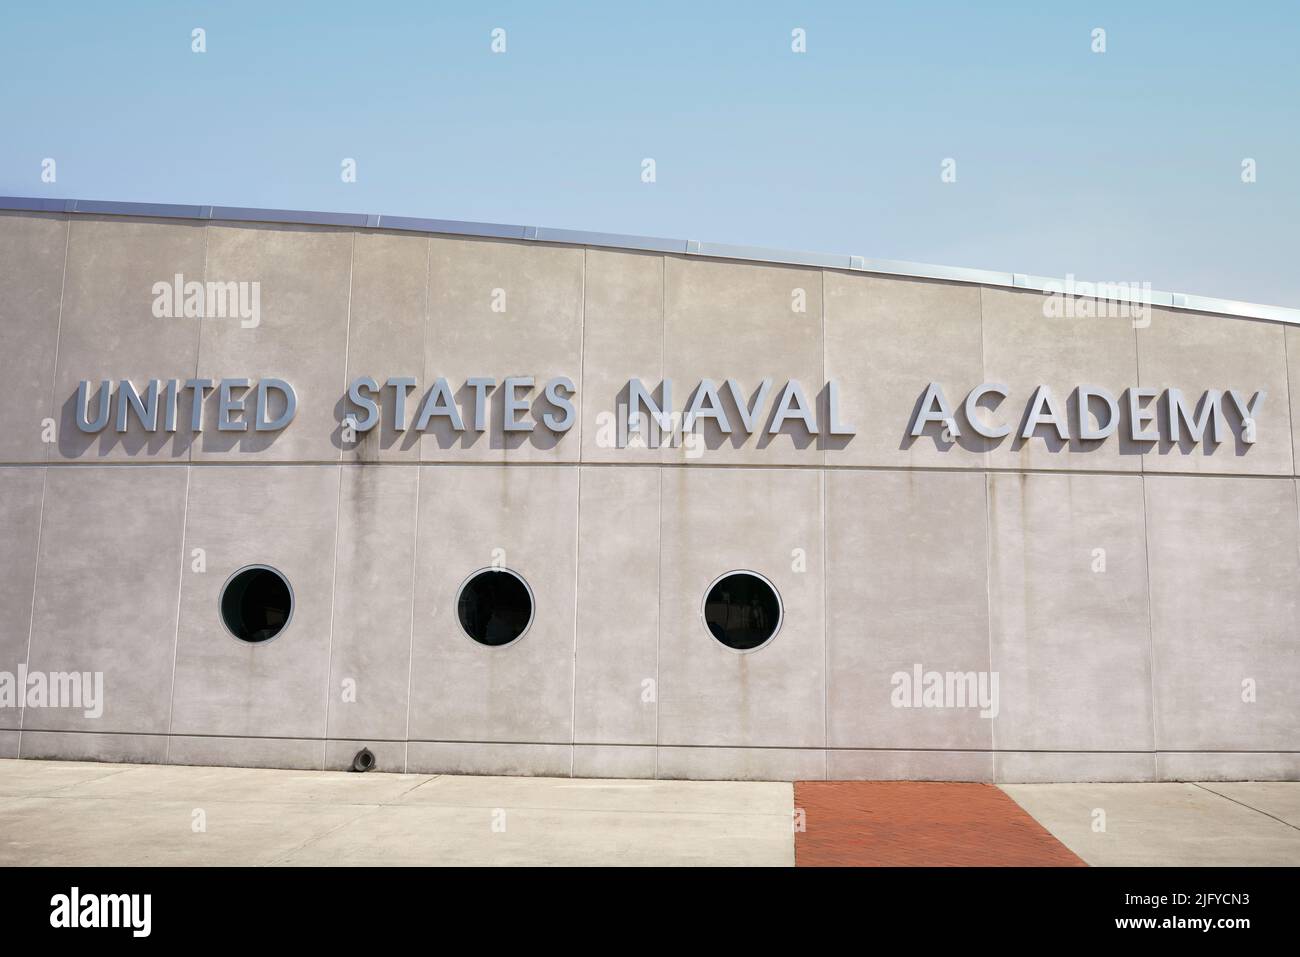 Academia Naval de los Estados Unidos en Annapolis, Maryland, EE.UU. Foto de stock